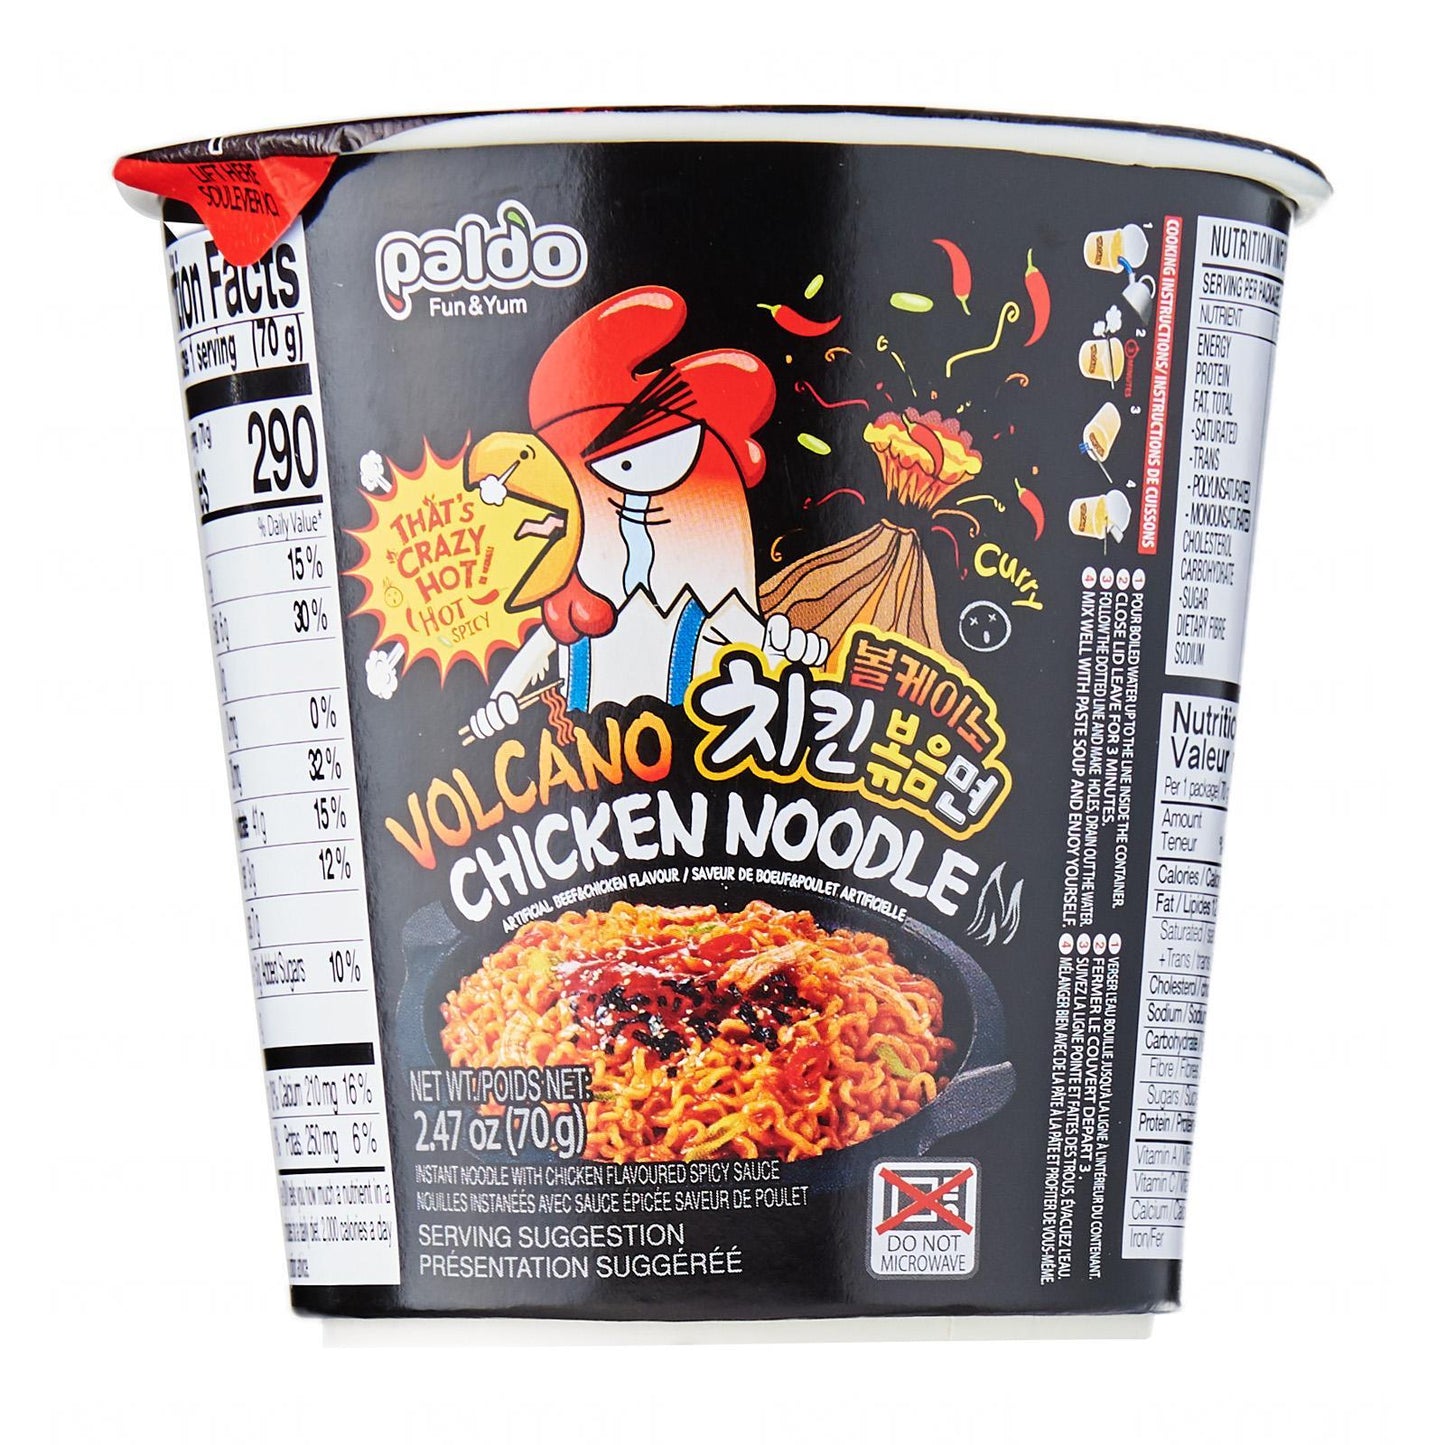 Paldo Volcano Chicken Noodle Cup 70g